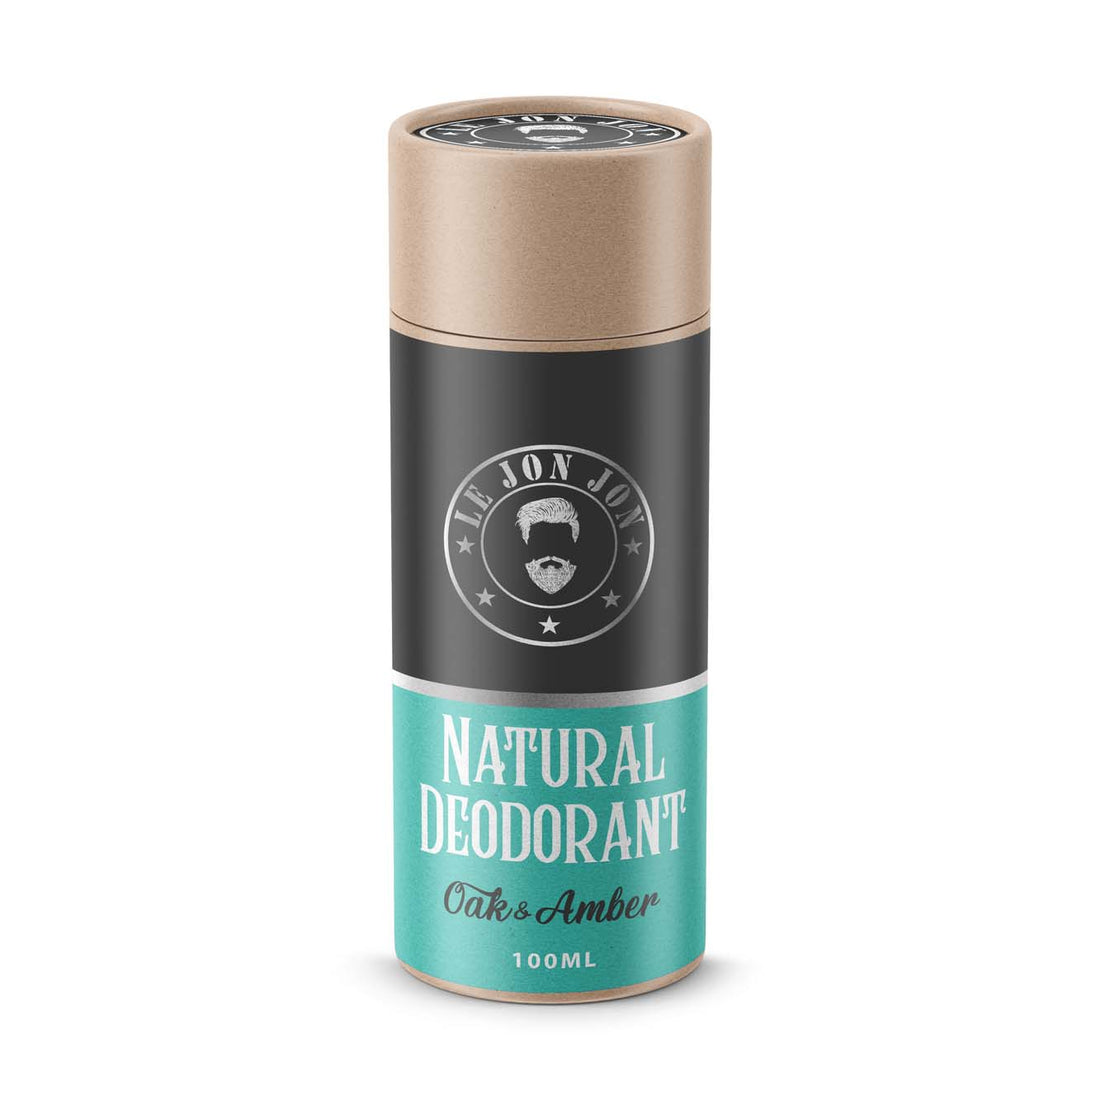 Oak & Amber natural deodorant